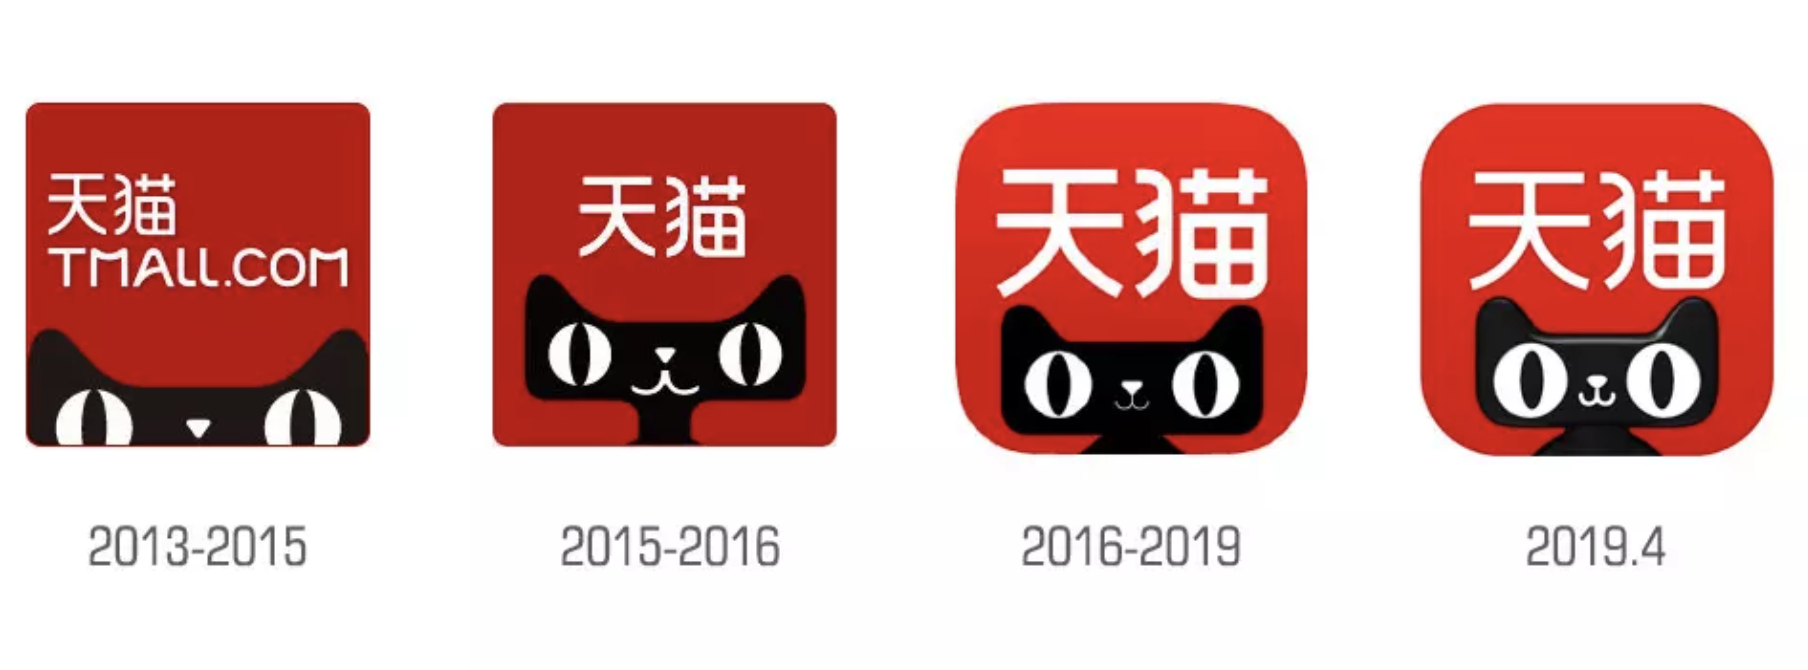 天猫更新全新logo和IP吉祥物设计，更加潮流和年轻-深圳VI设计5